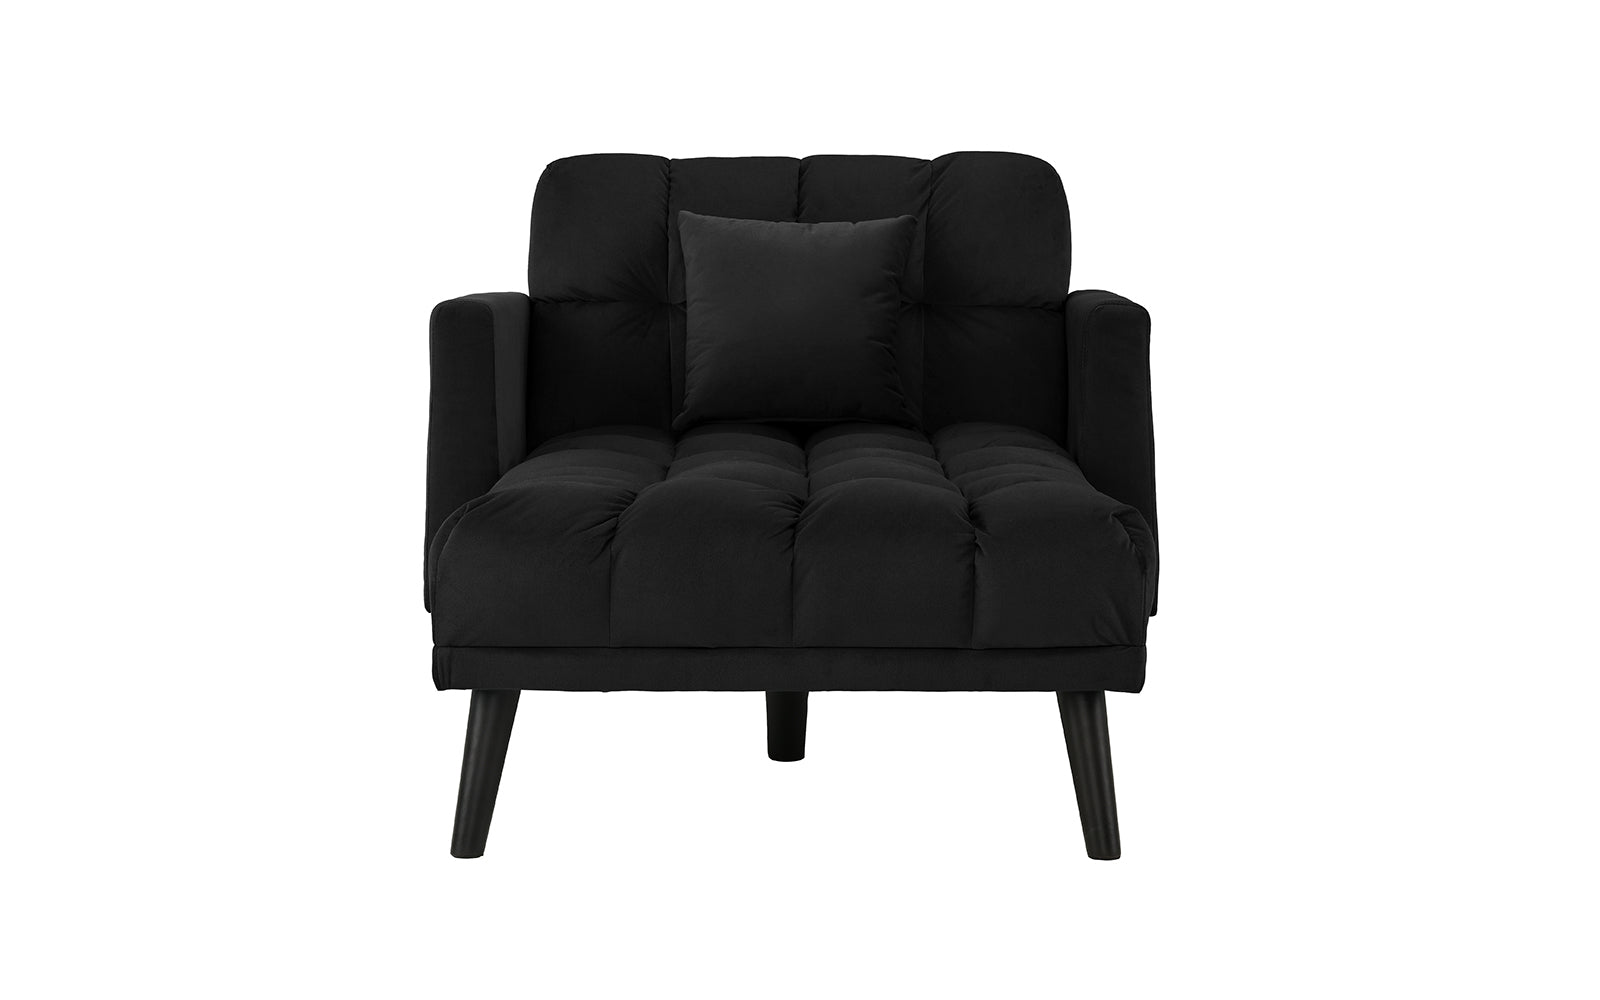 Ellery Contemporary Velvet Sleeper Chaise Lounge